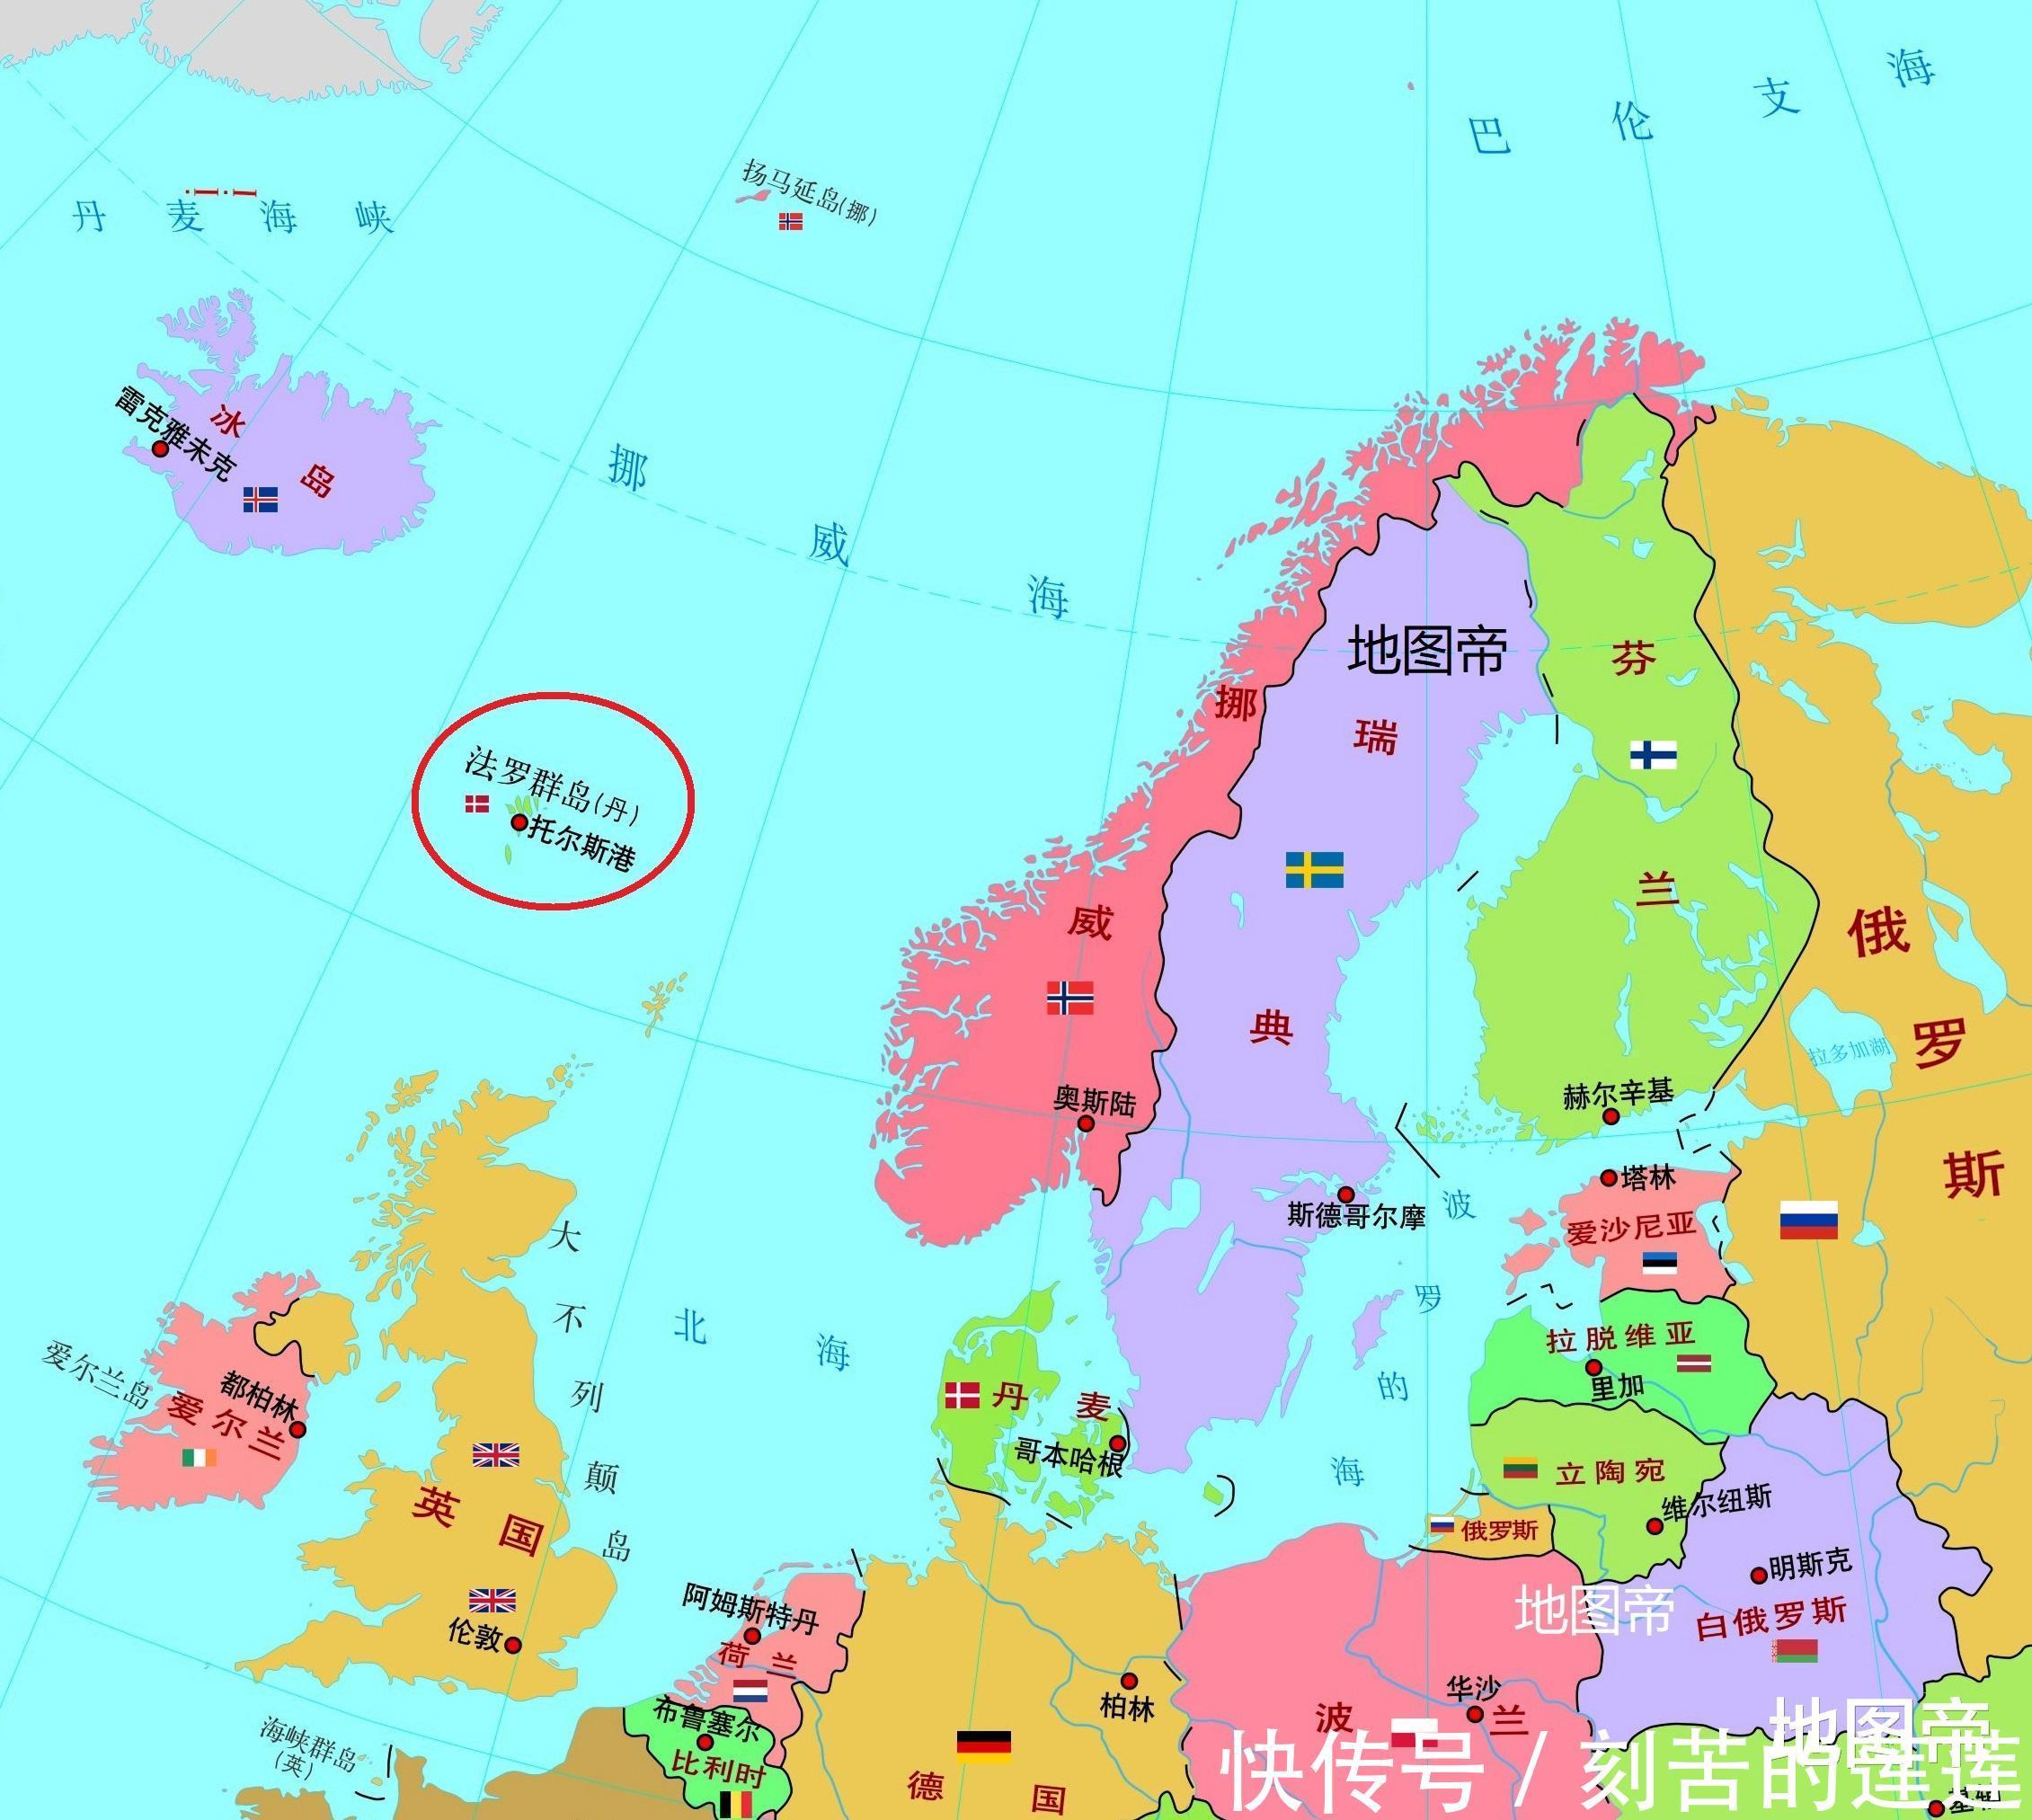 丹麦本土面积4万多平方公里,为何海外有